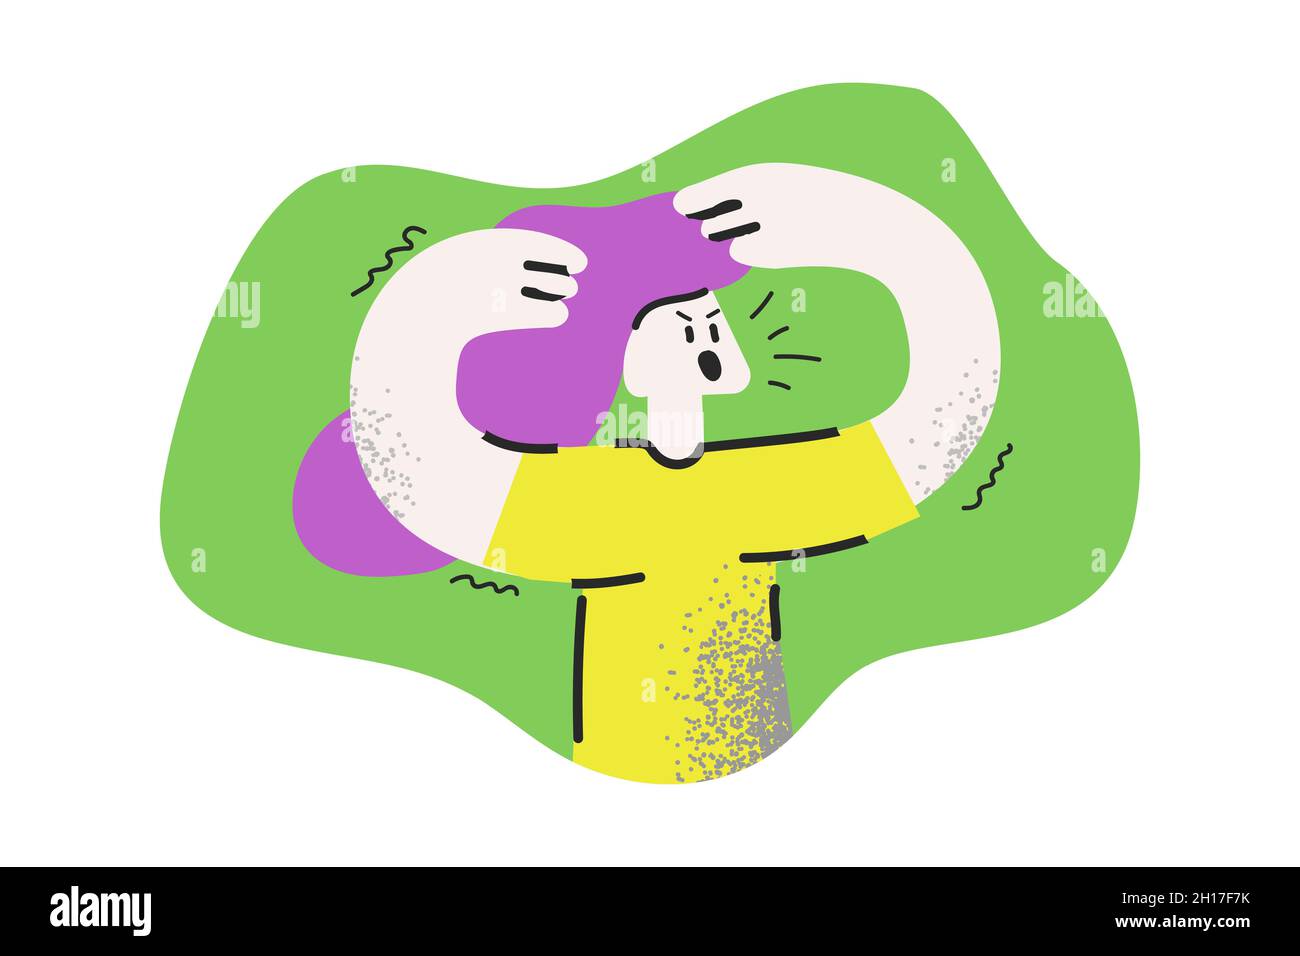 Junge wütend Frau Zeichentrickfigur isoliert auf einem grünen Hintergrund. Unglückliches Mädchen mit Händen am Kopf angehoben Gefühl negative Emotionen. Emotionaler Stress, Konflikt Ausdrücke Vektor-Konzept. Stock Vektor